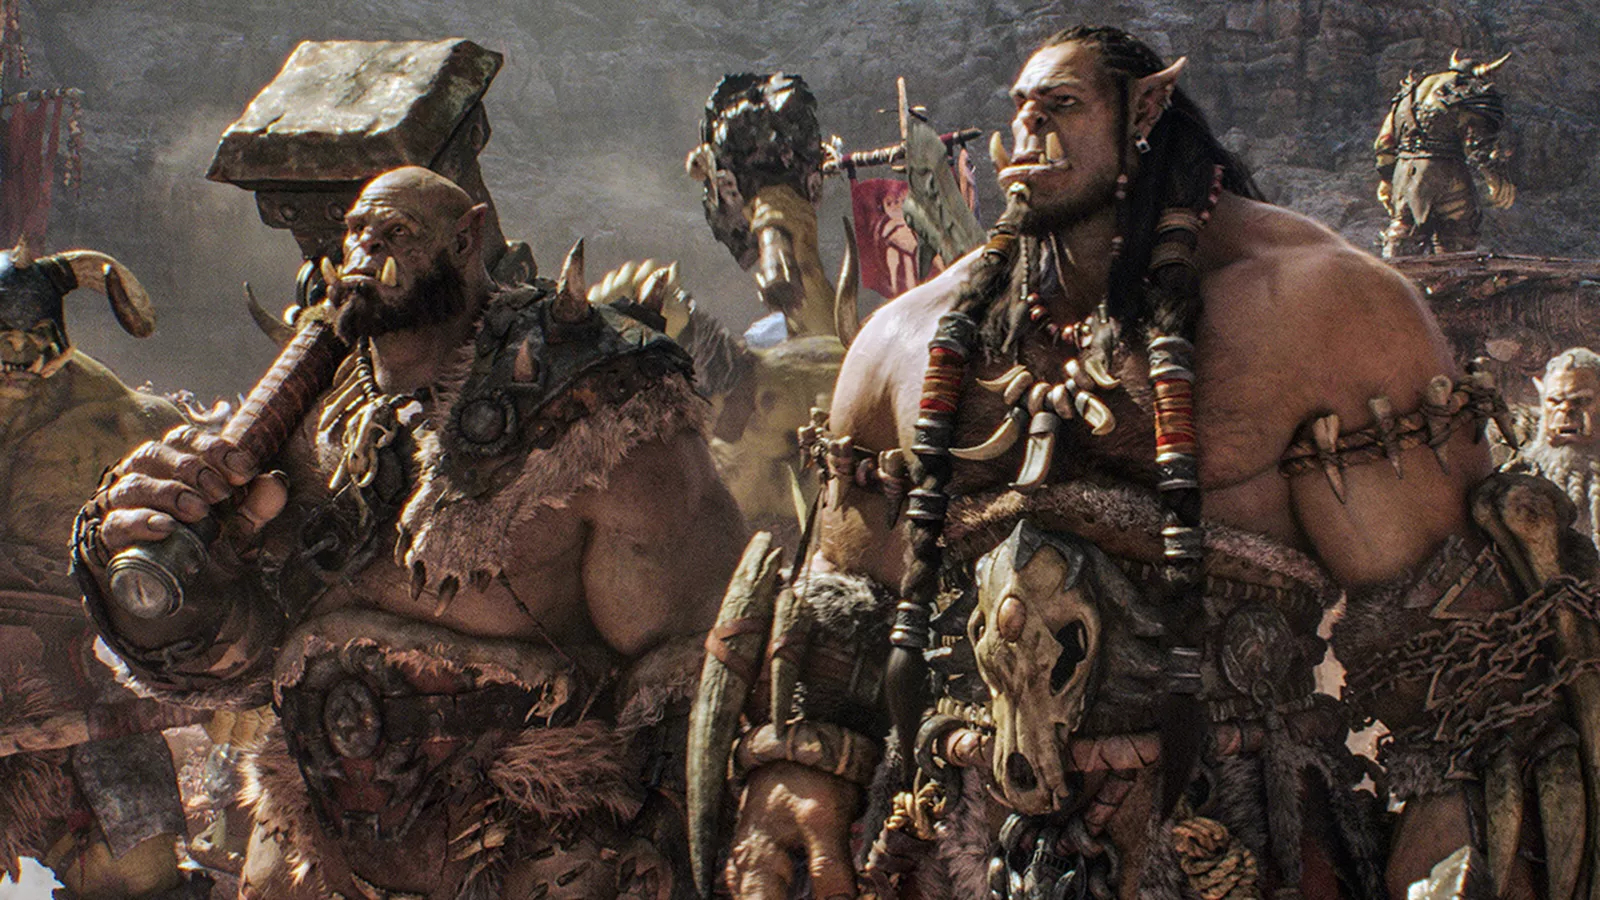 A World of Warcraft film folytatása Blizzard Entertainment